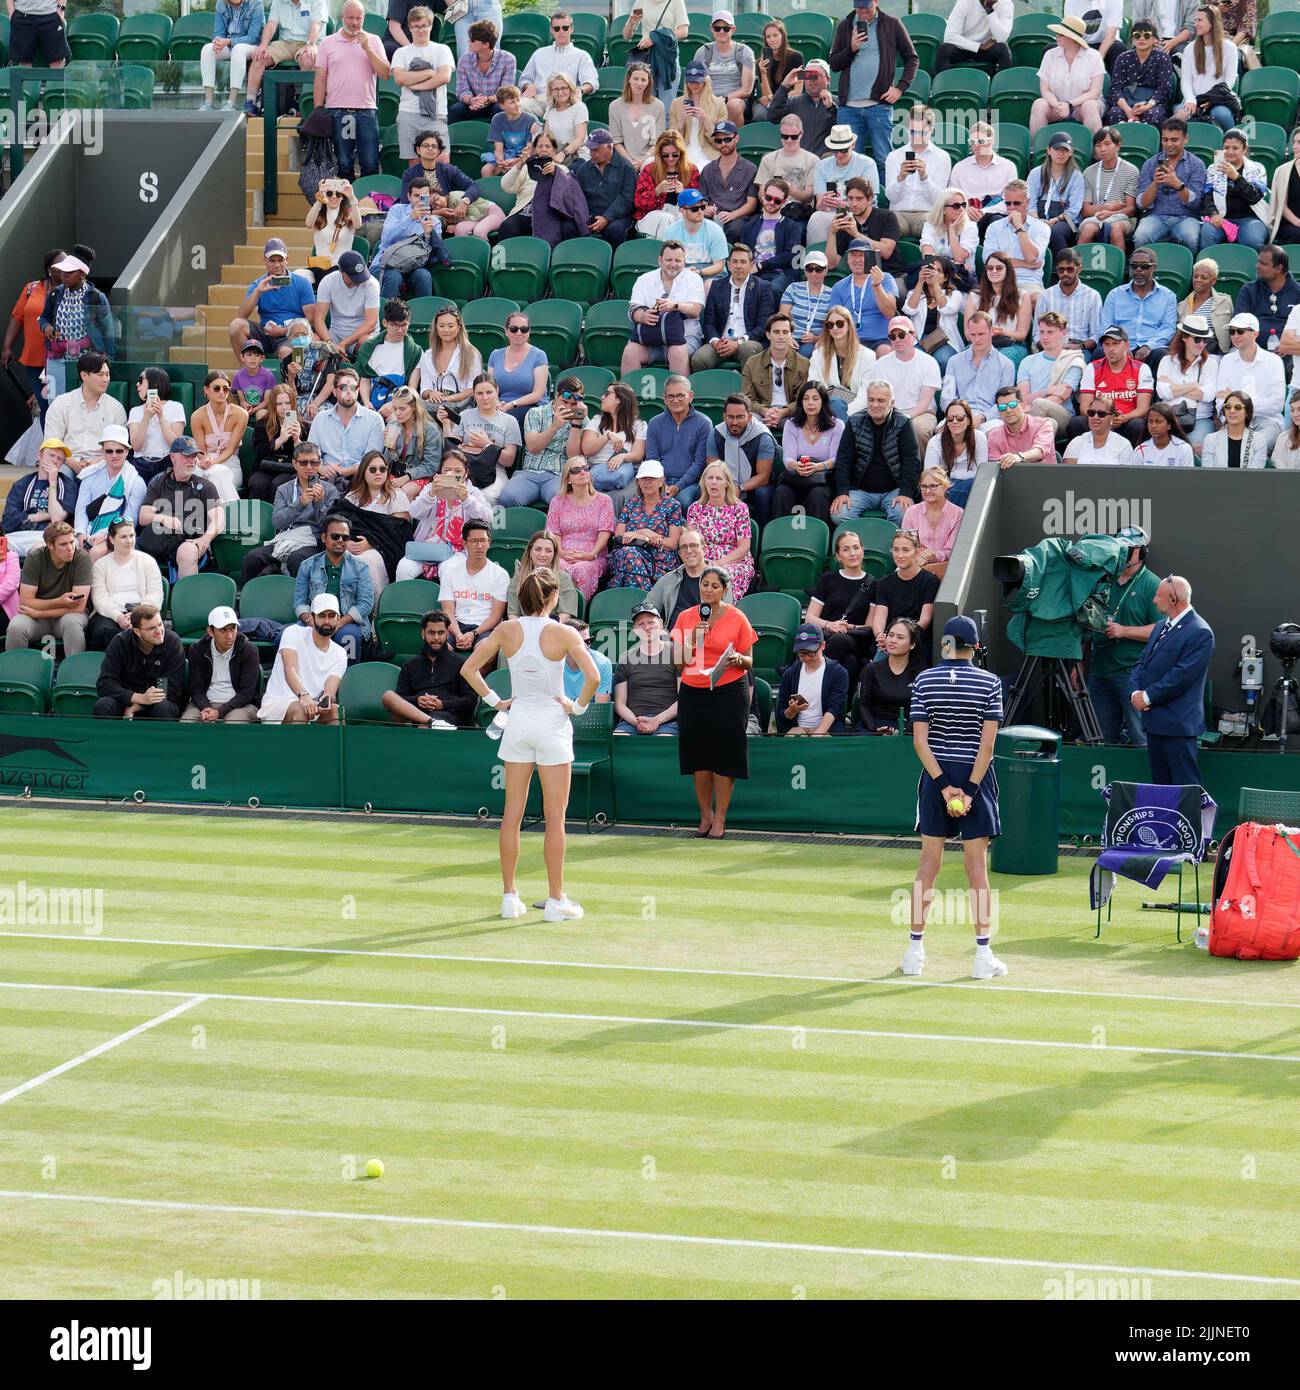 Wimbledon, Gran Londres, Inglaterra, Julio 02 2022: Campeonato de Tenis de Wimbledon. La croata Petra Martic siendo entrevistada después de ganar su partido. Foto de stock